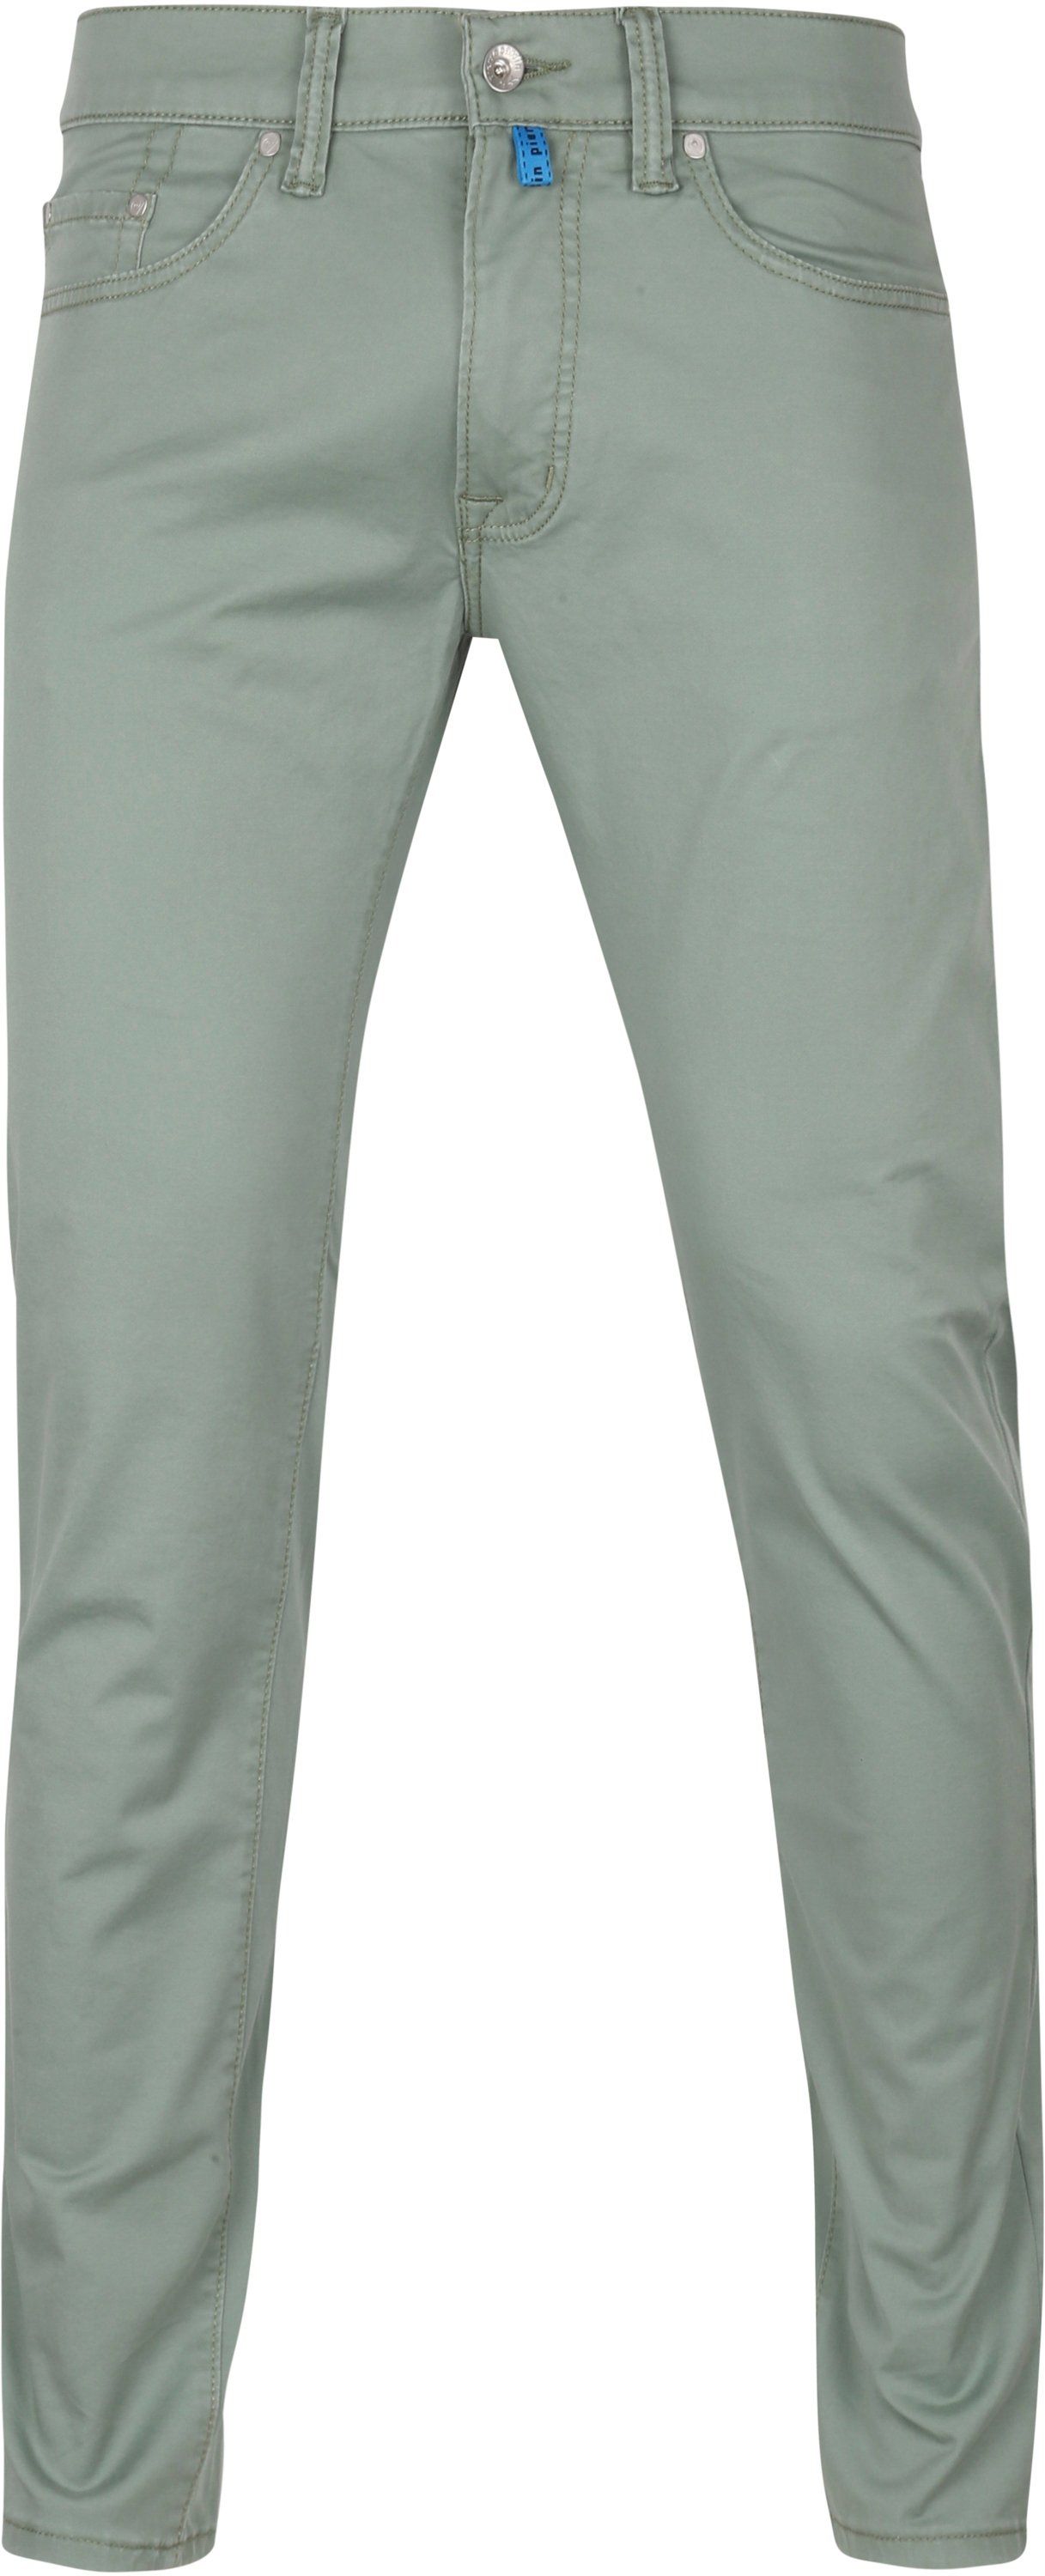 Pierre Cardin Jeans Antibes Future Flex Green size W 31